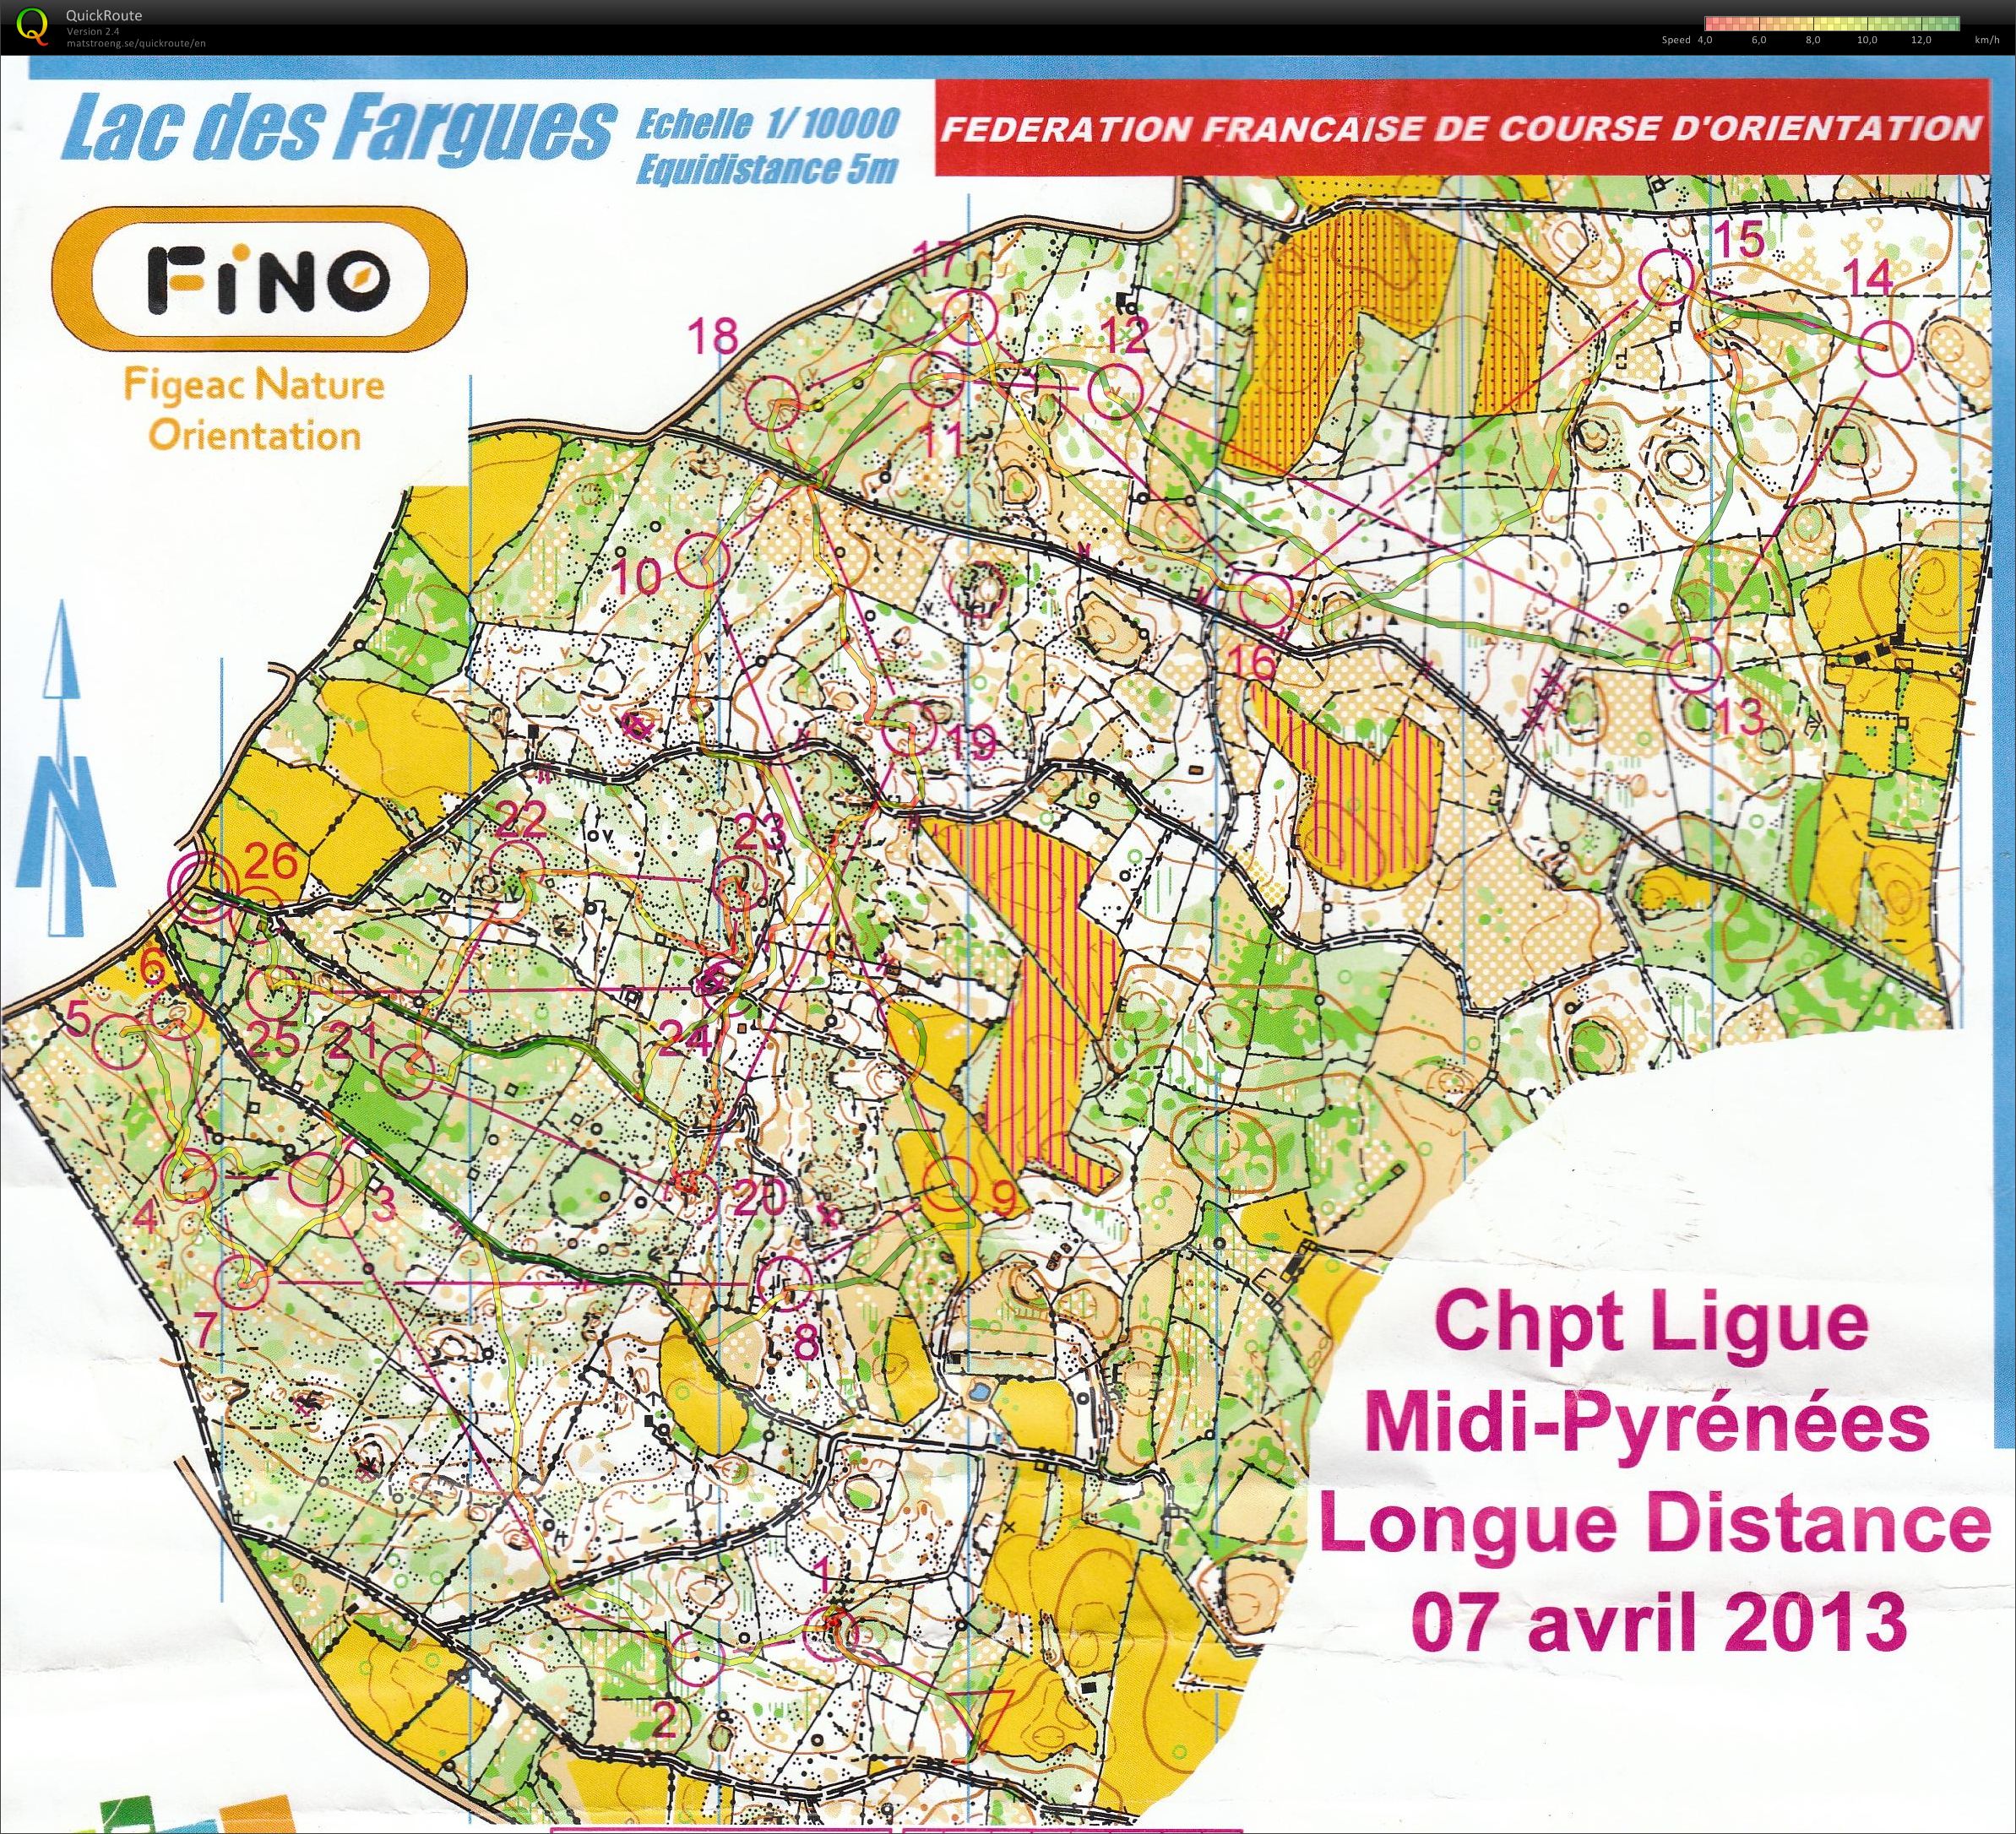 Championnat Régional LD Midi-Pyrénées (07-04-2013)